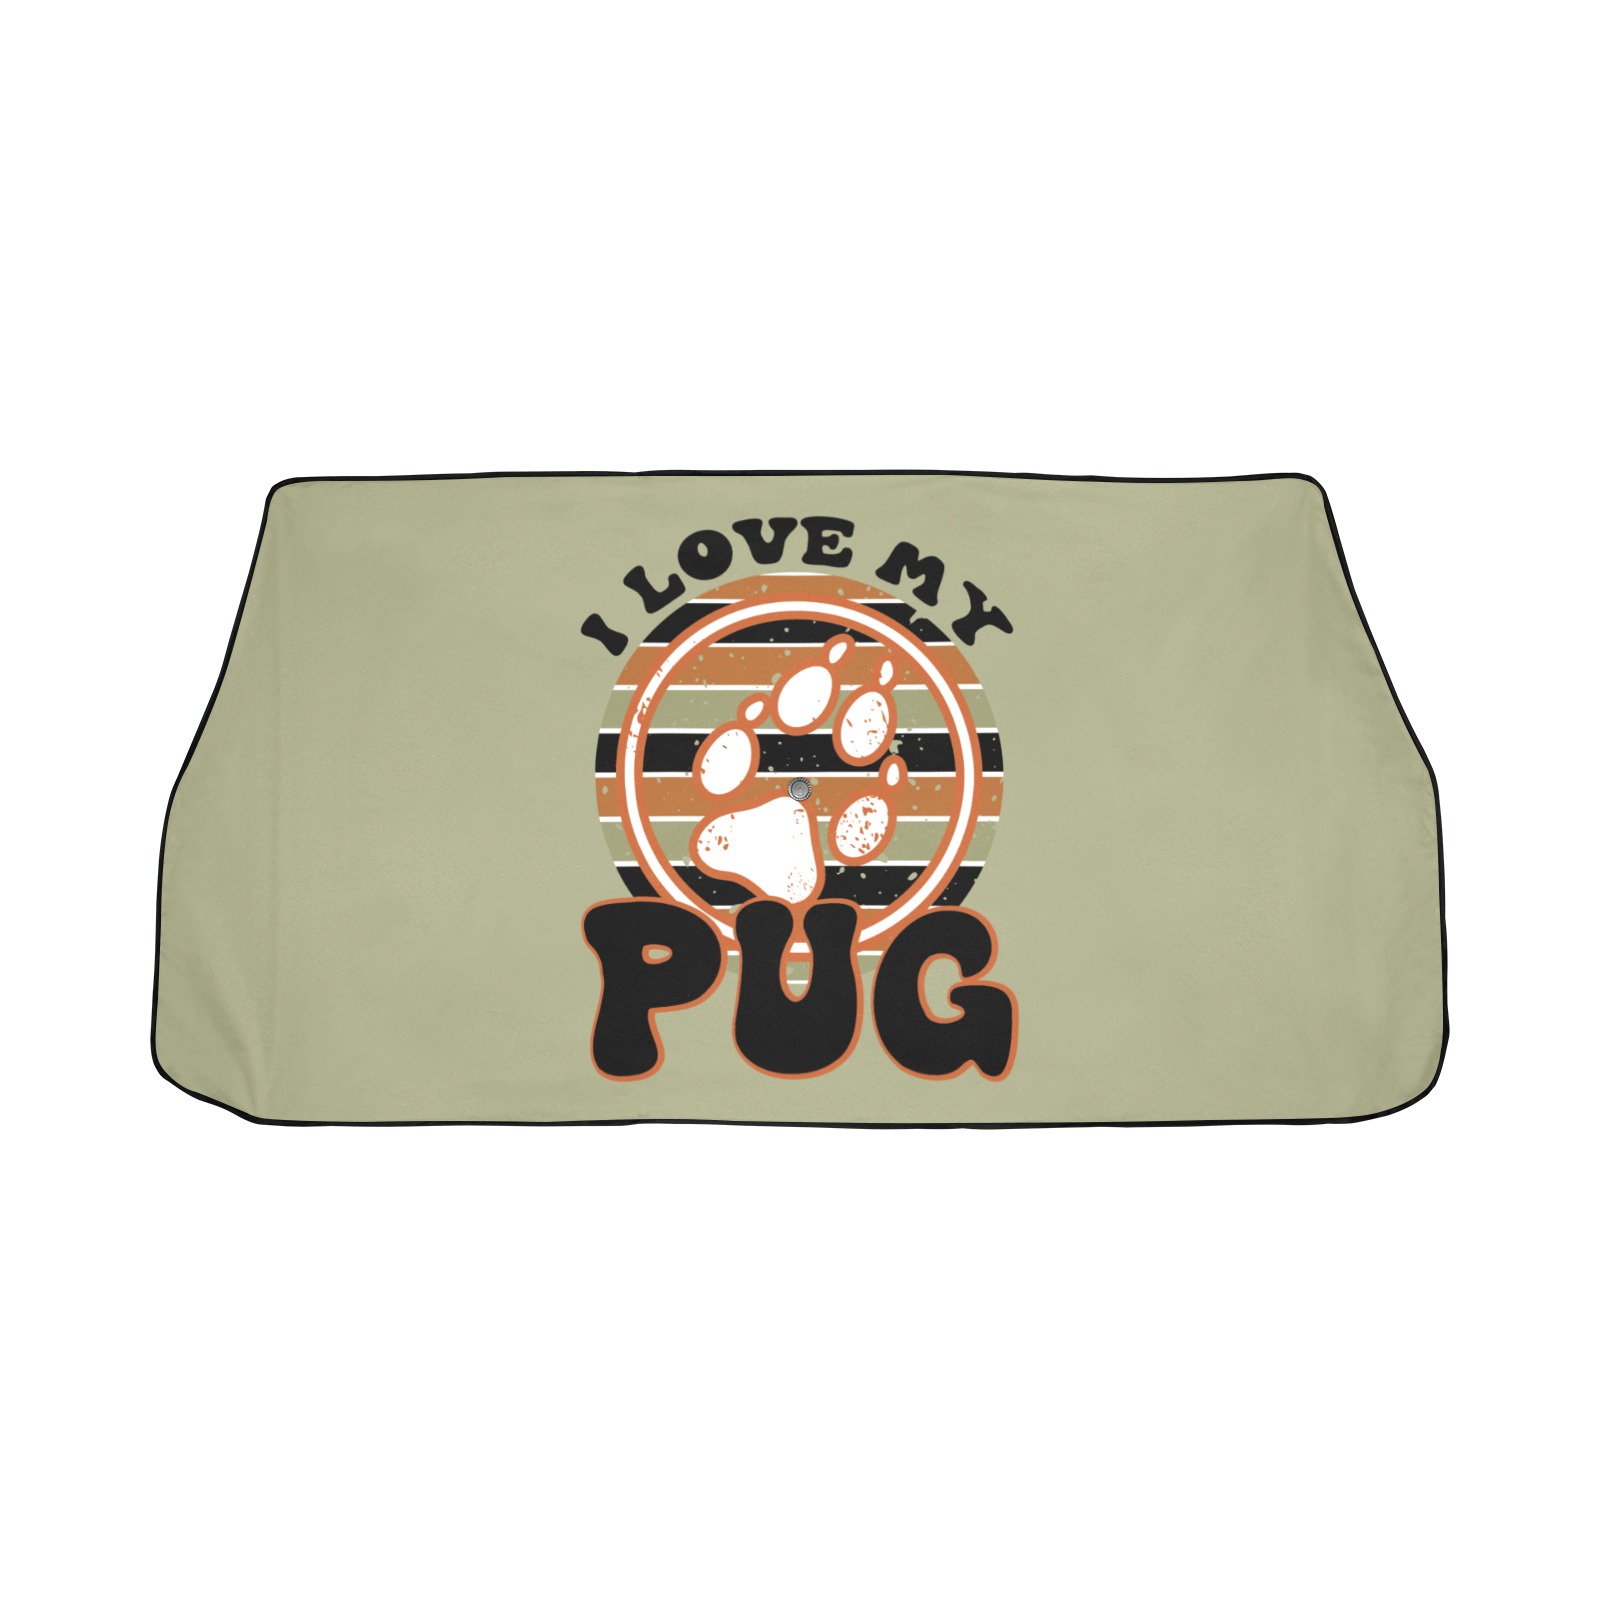 I love my Pug-01 Car Sun Shade Umbrella 58"x29"